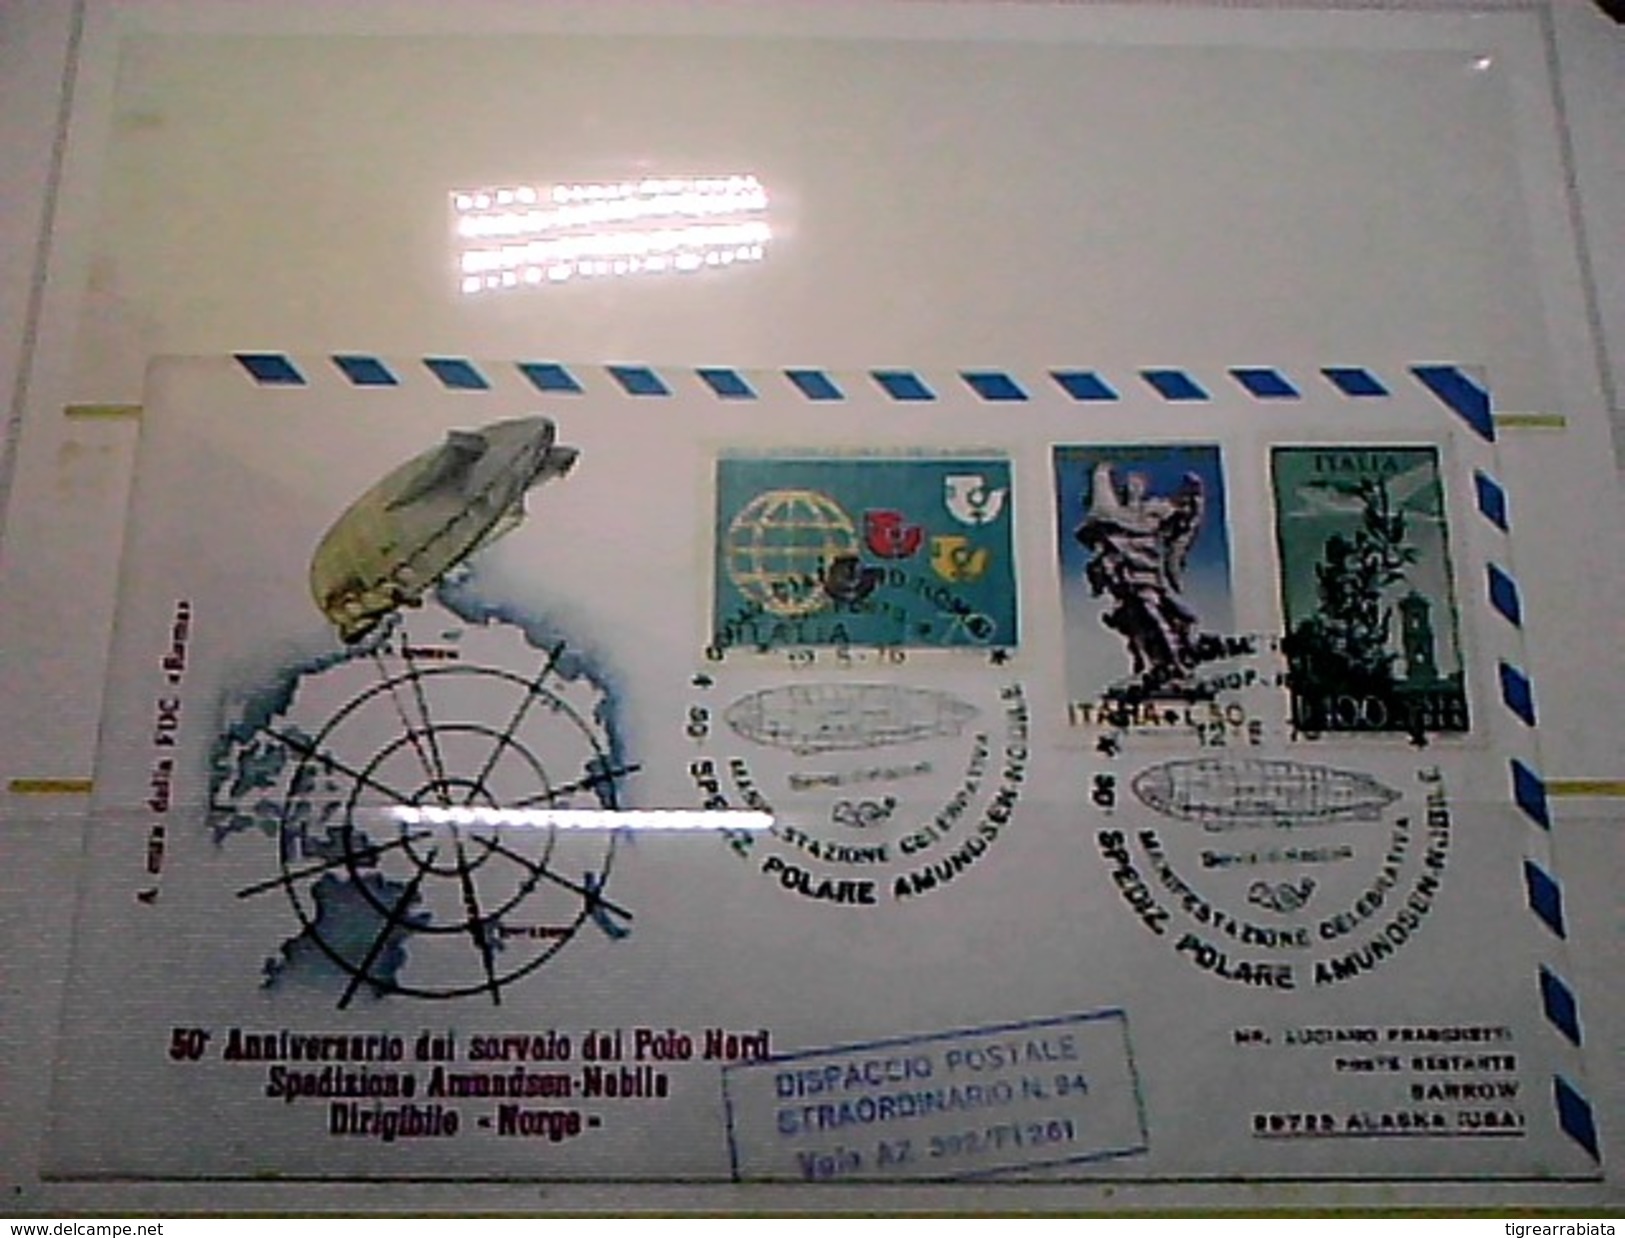 102582) Lettera  Con Annullo Speciale-50° Anniversario Sorvolo Del Polo Nord-nobile-dirigibile-norge-ciampino- 12-5-1976 - Zeppelin